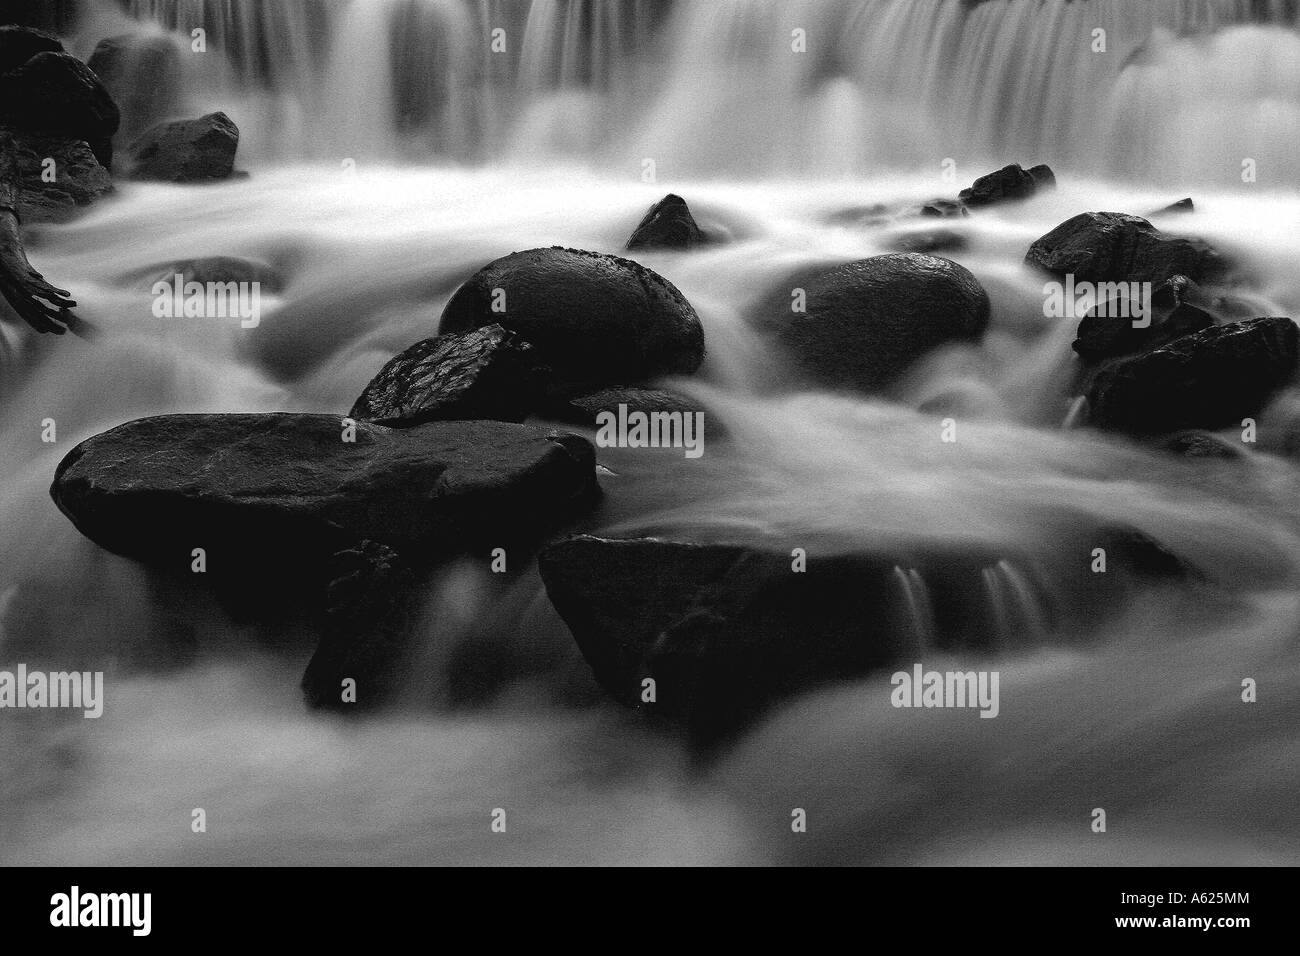 Schwarz / weiß Bild eines schottischen Flusses wie das Wasser, eingefangen in Zeitlupe, stürzt stromabwärts. Stockfoto